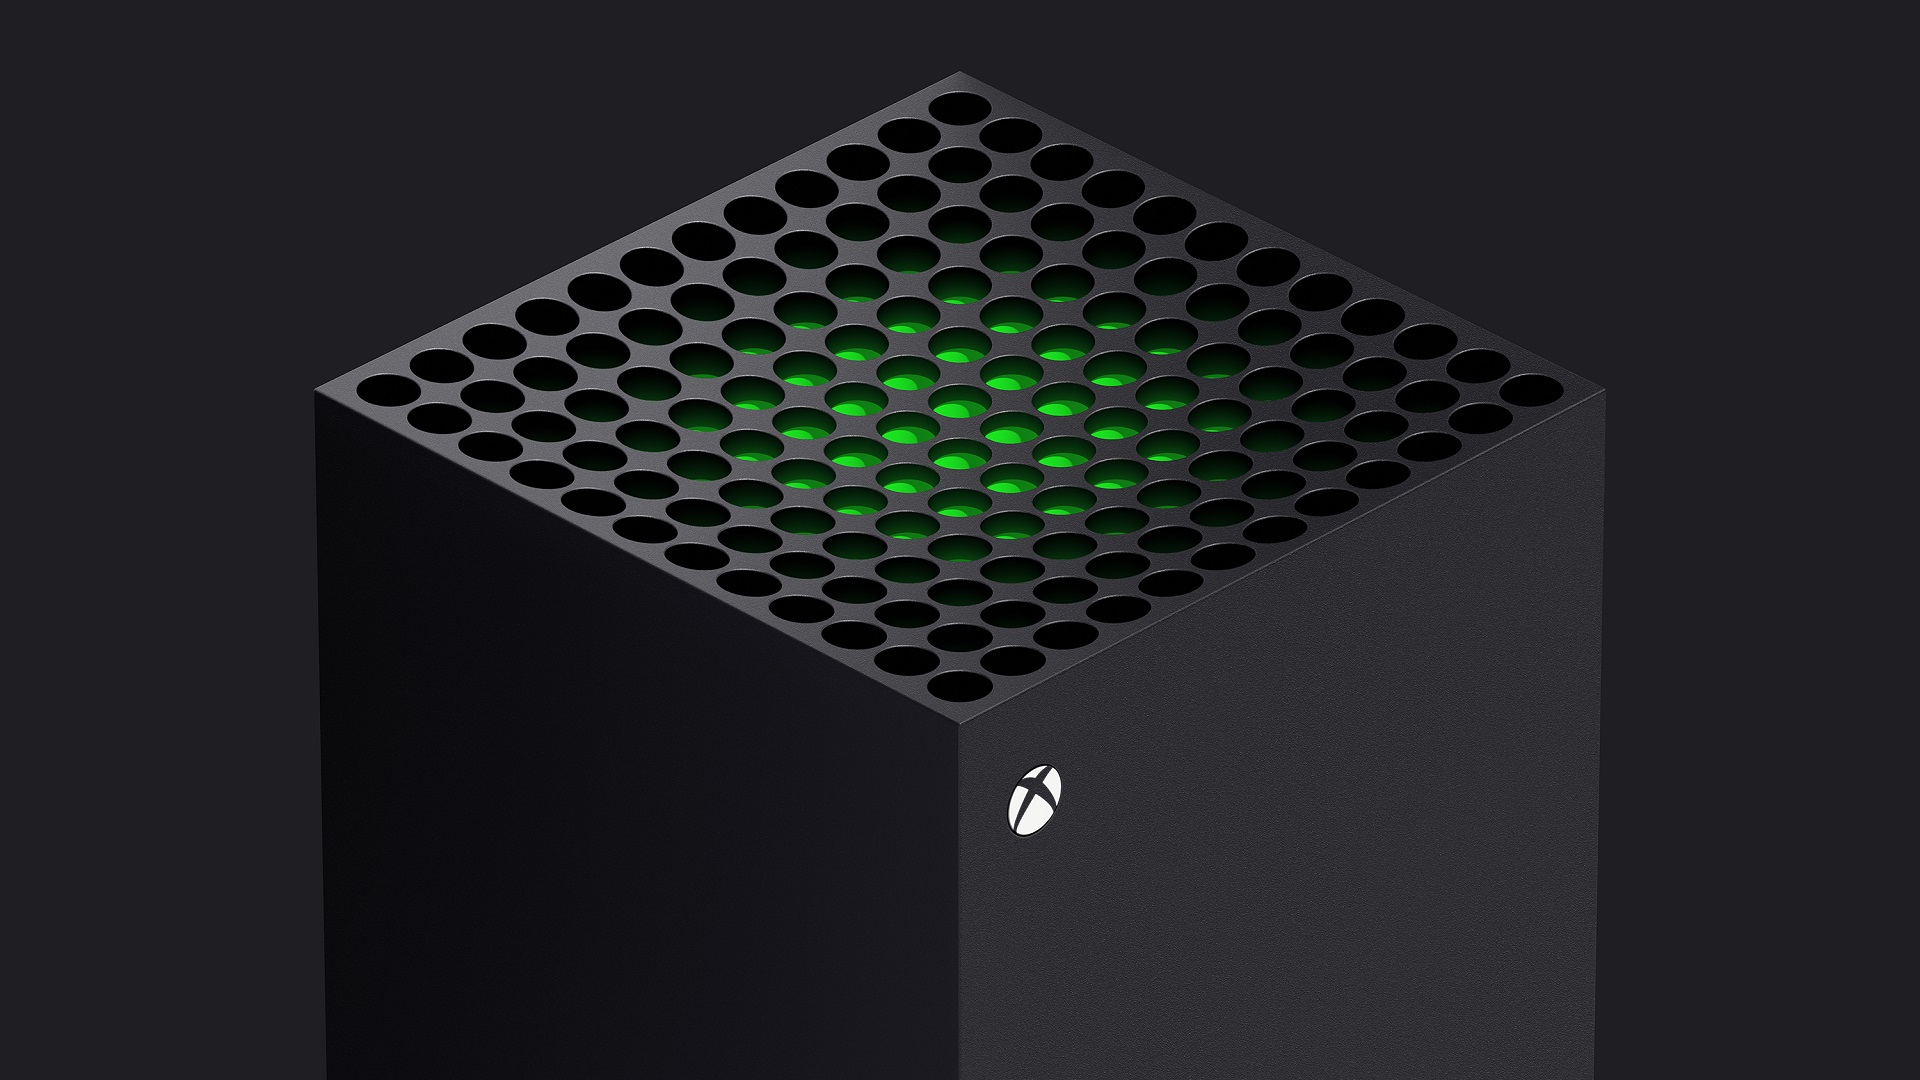 Xbox "absolutamente" tiene que invertir en más estudios, Phil Spencer dice 